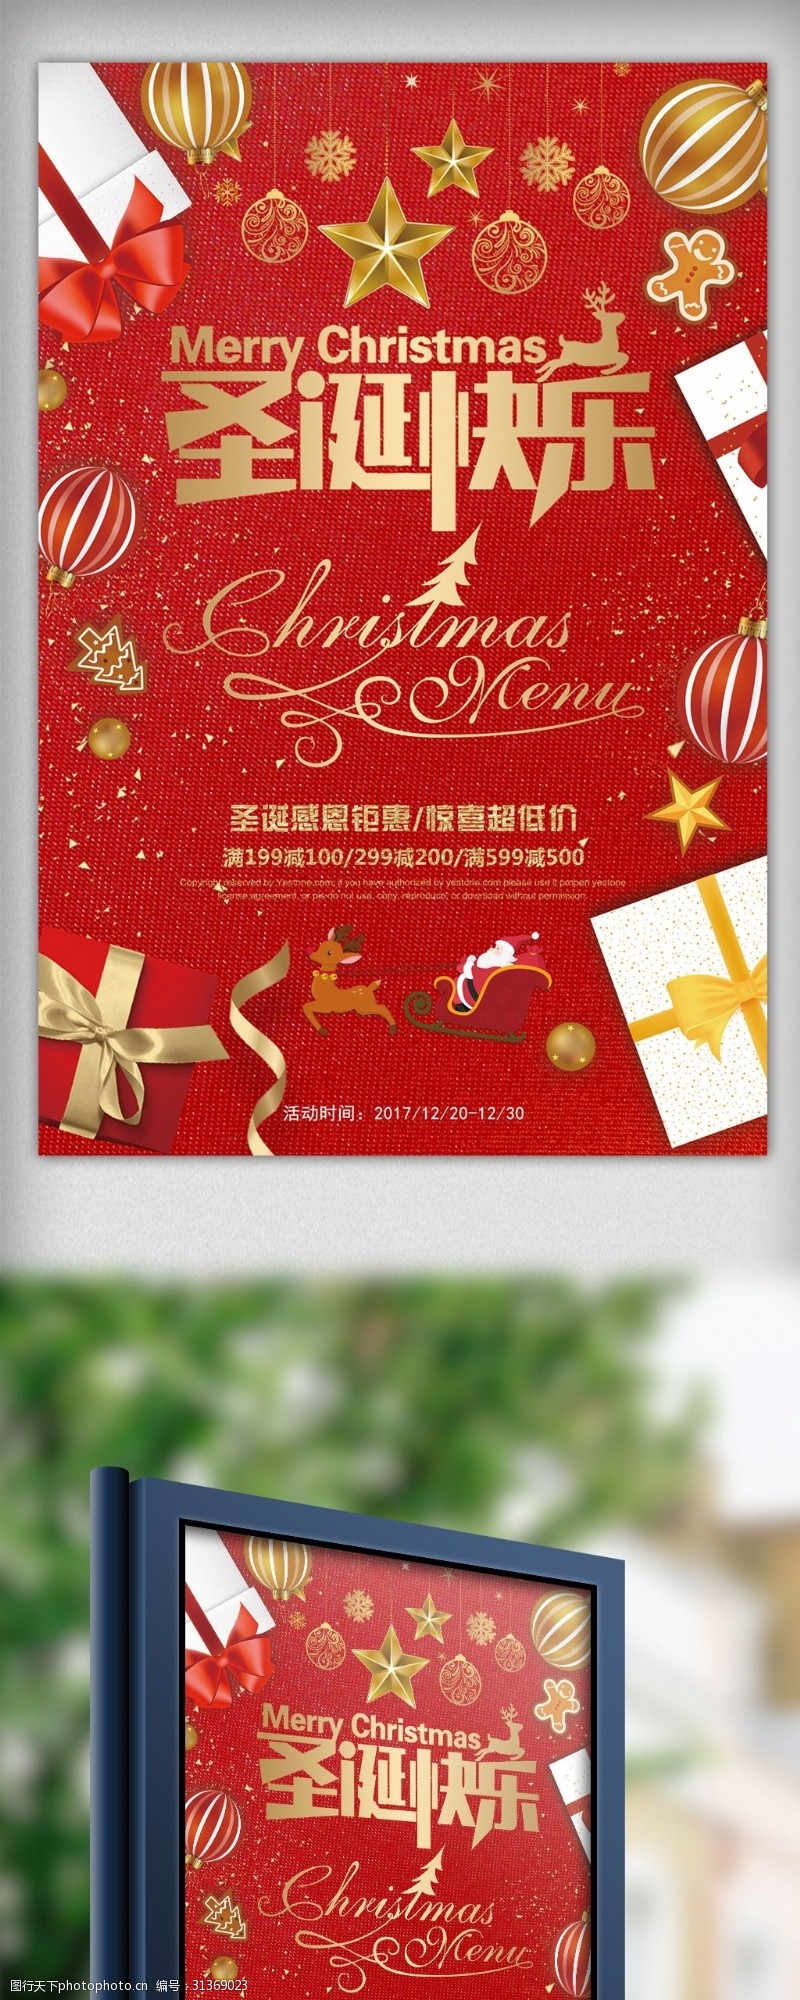 邀请函素材下载圣诞快乐主题海报下载